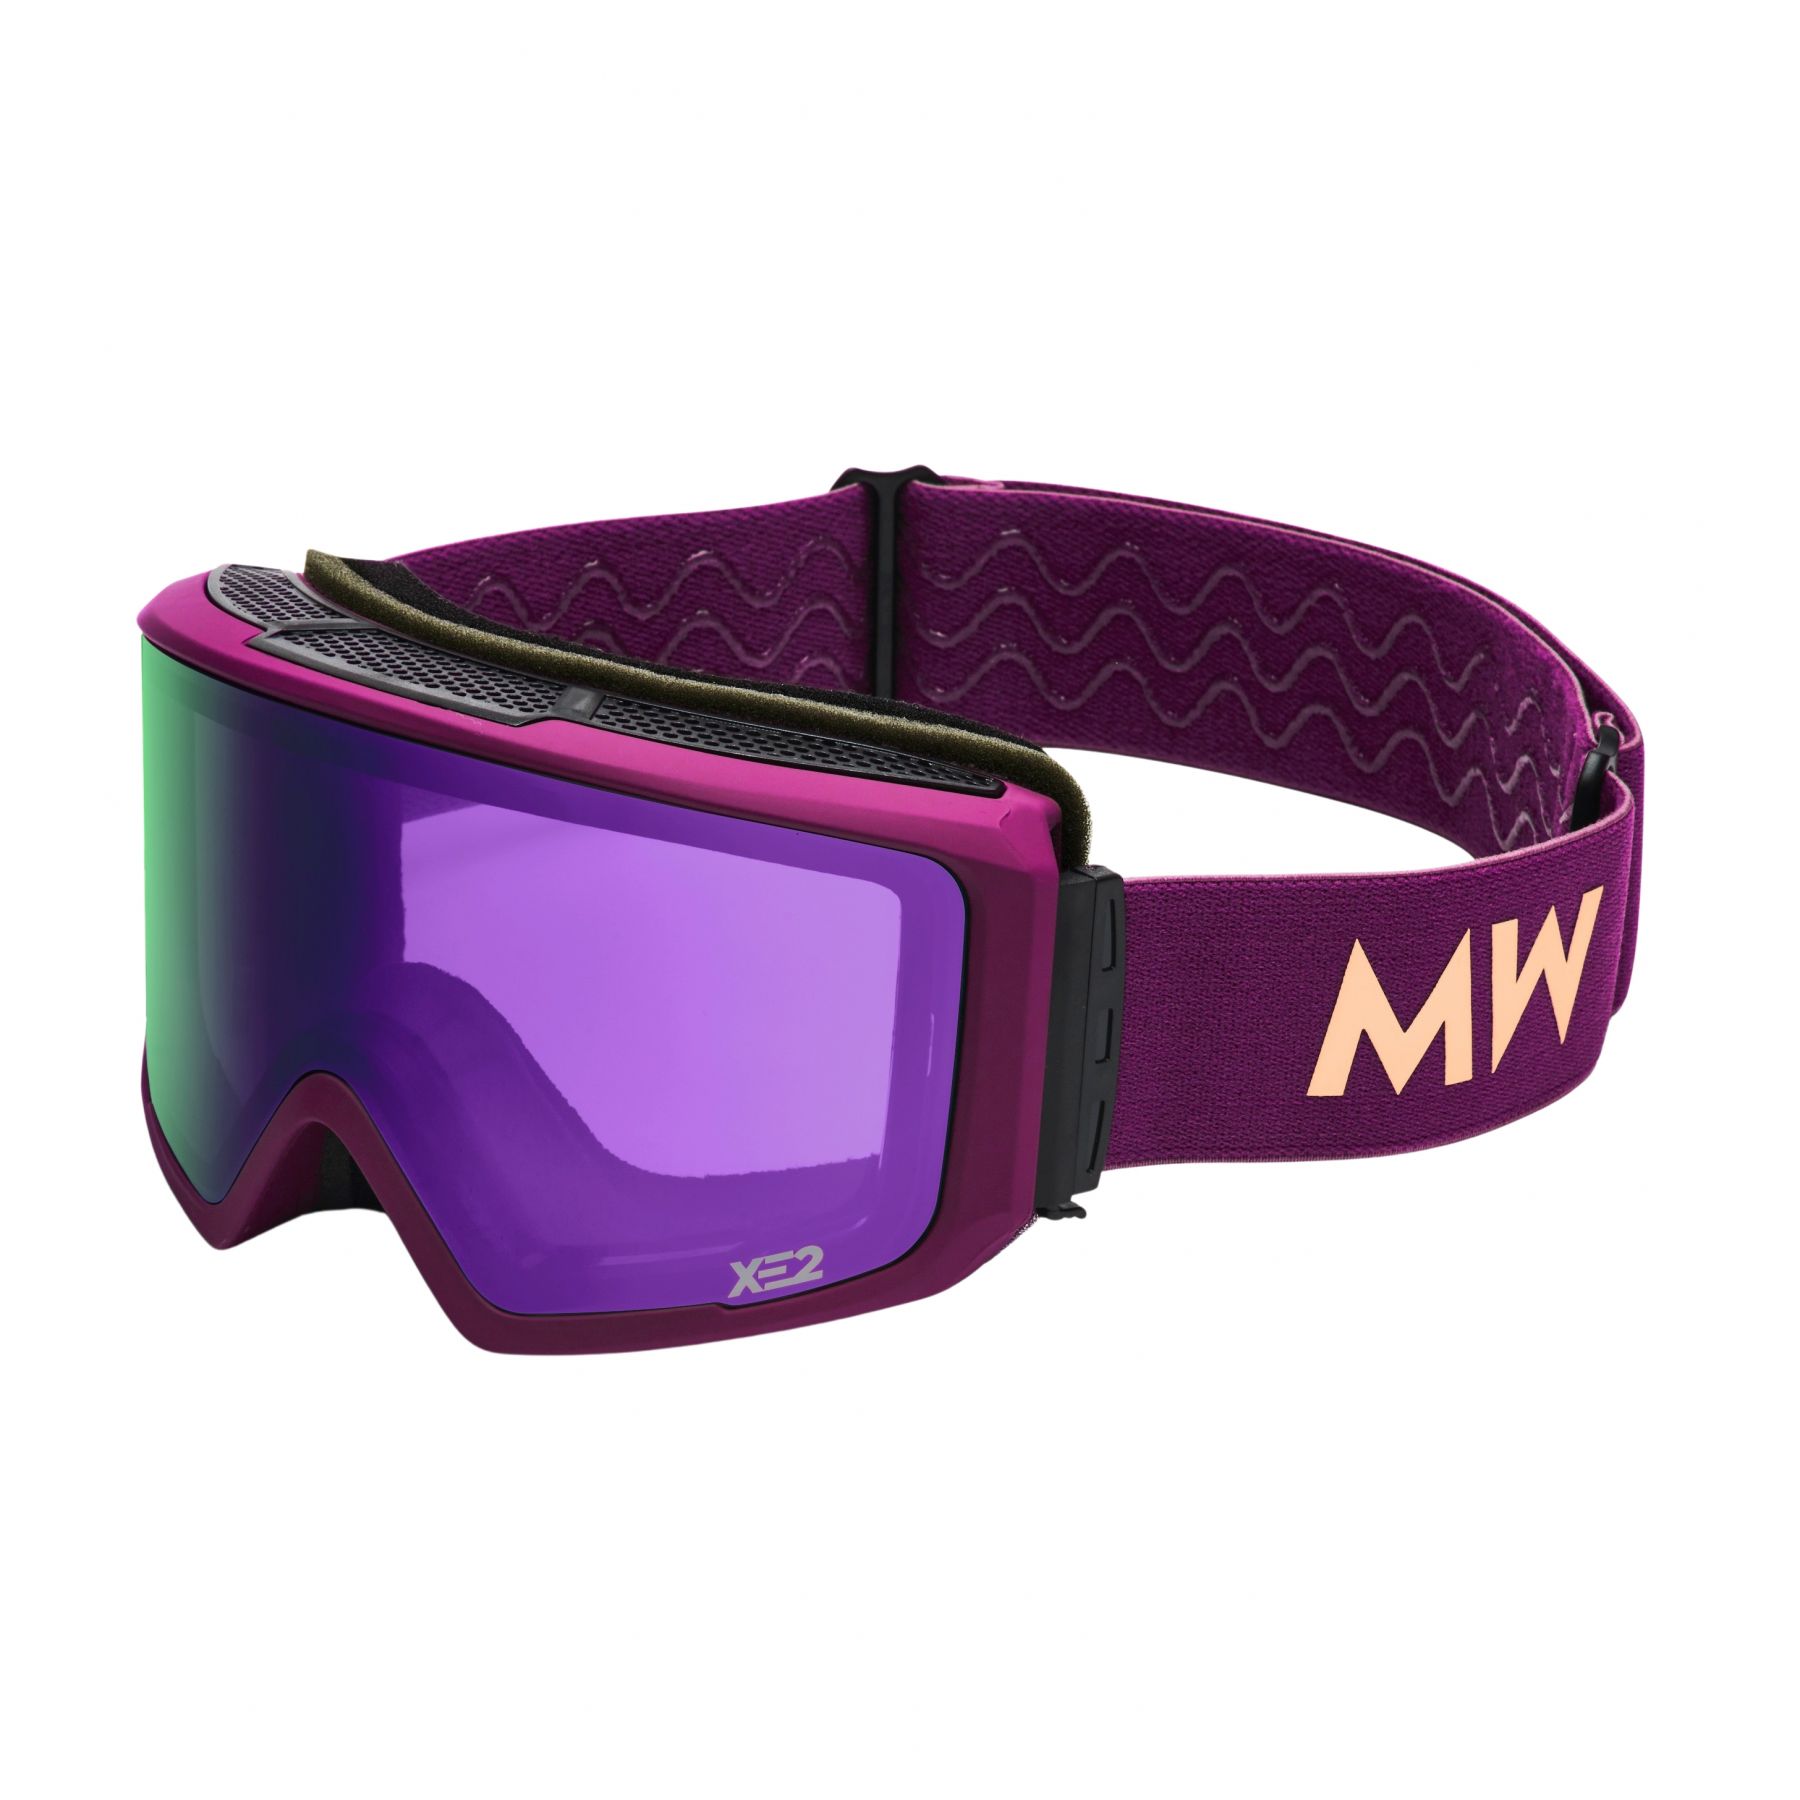 Brug MessyWeekend Flip XE2, skibriller, lilla til en forbedret oplevelse